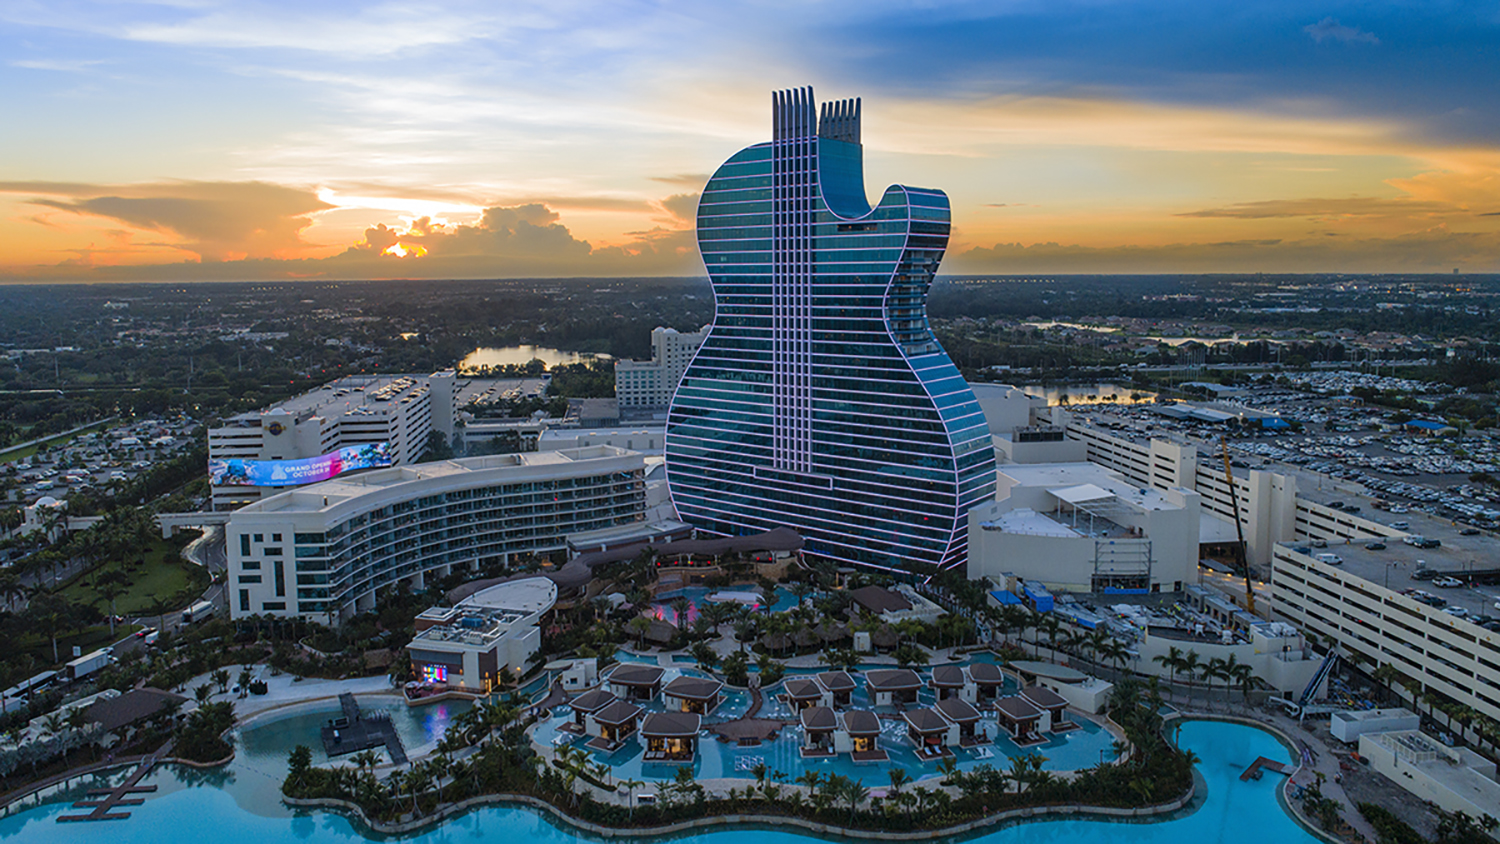 Este controversial hotel en forma de guitarra es el destino más deseado del 2020 y 2021